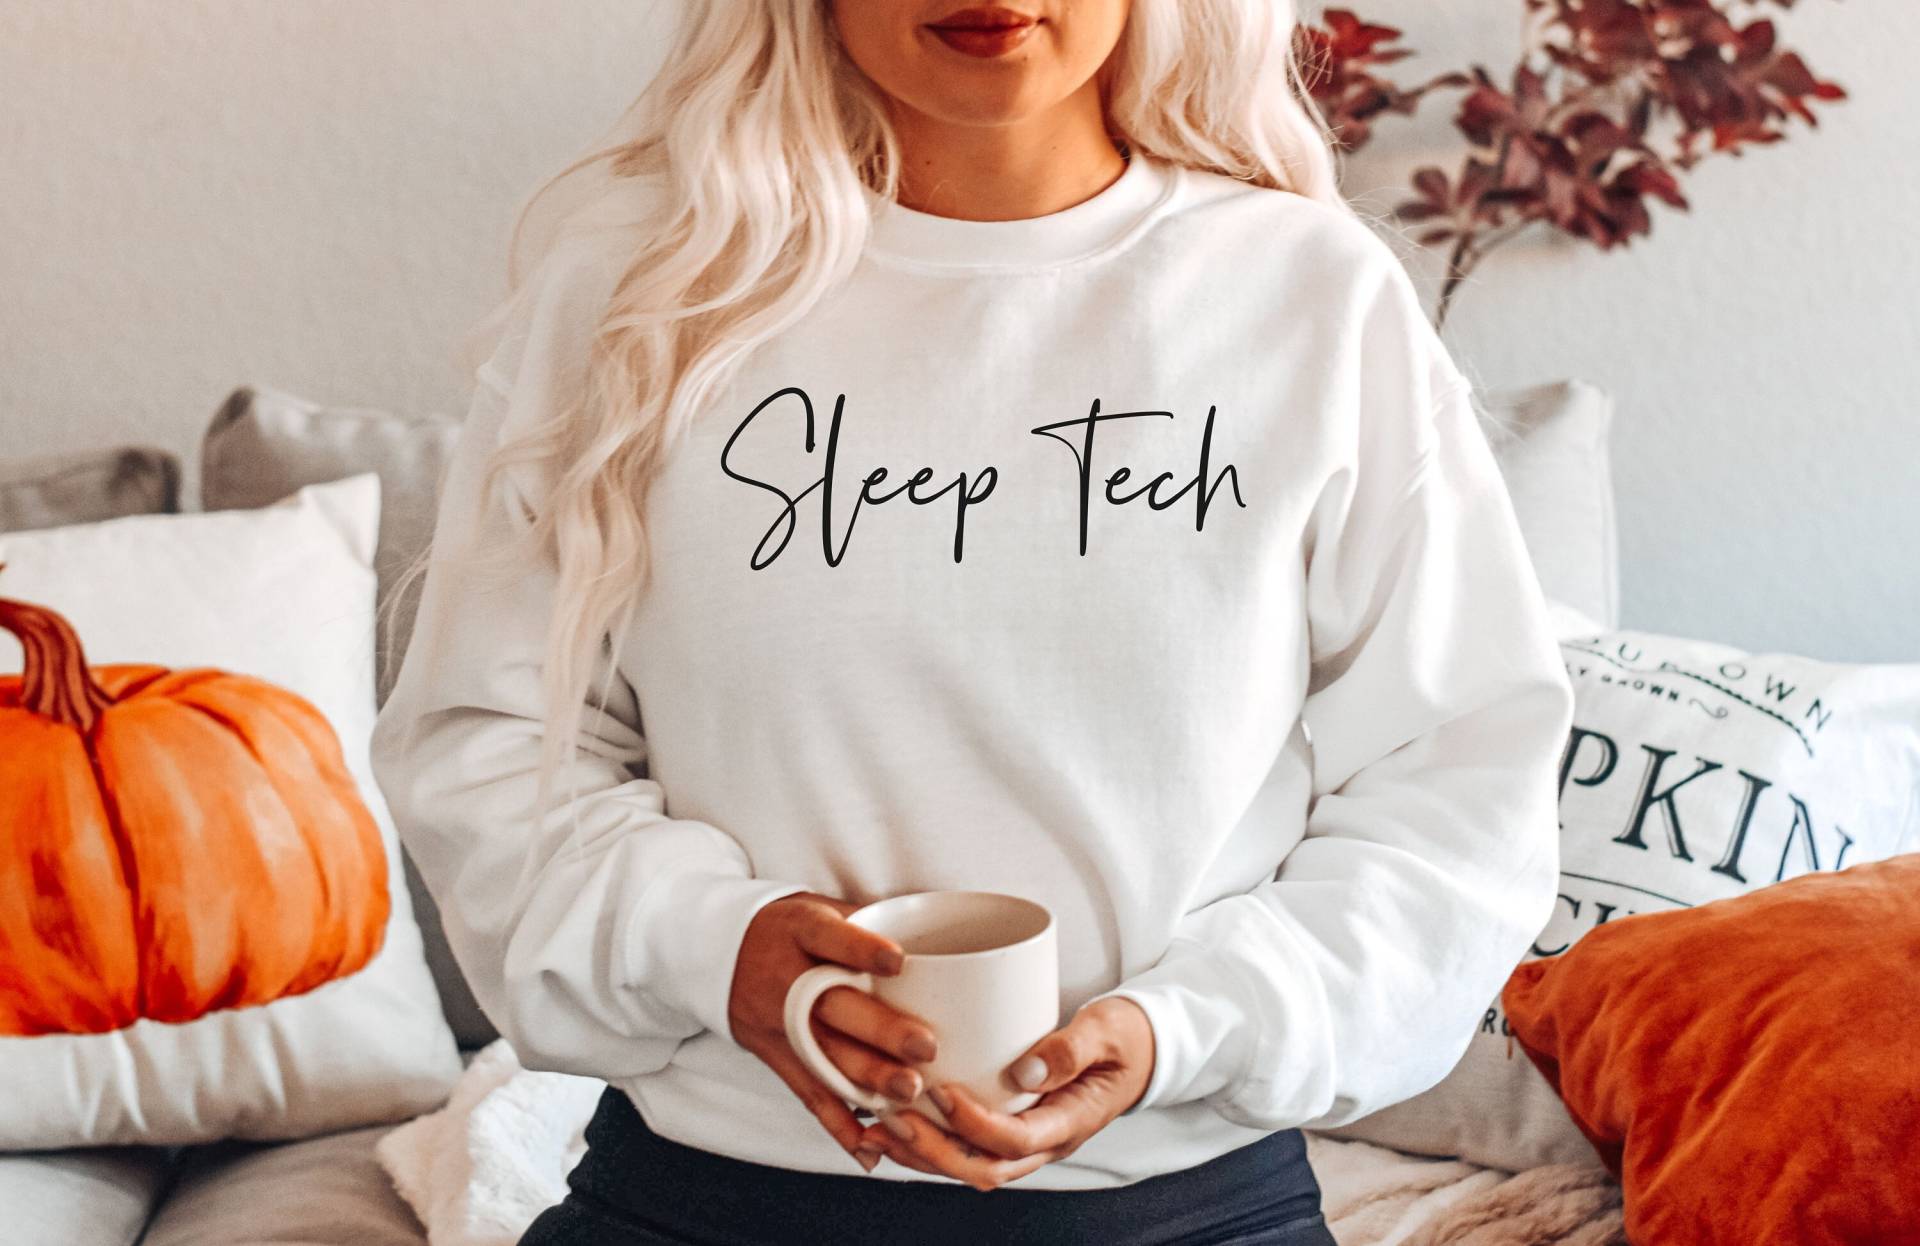 Sleep Tech Shirt, Sweatshirt, Hoodie, Tank Top, Geschenk, Technologist, Techniker, Rst von SleepingCutiesShop